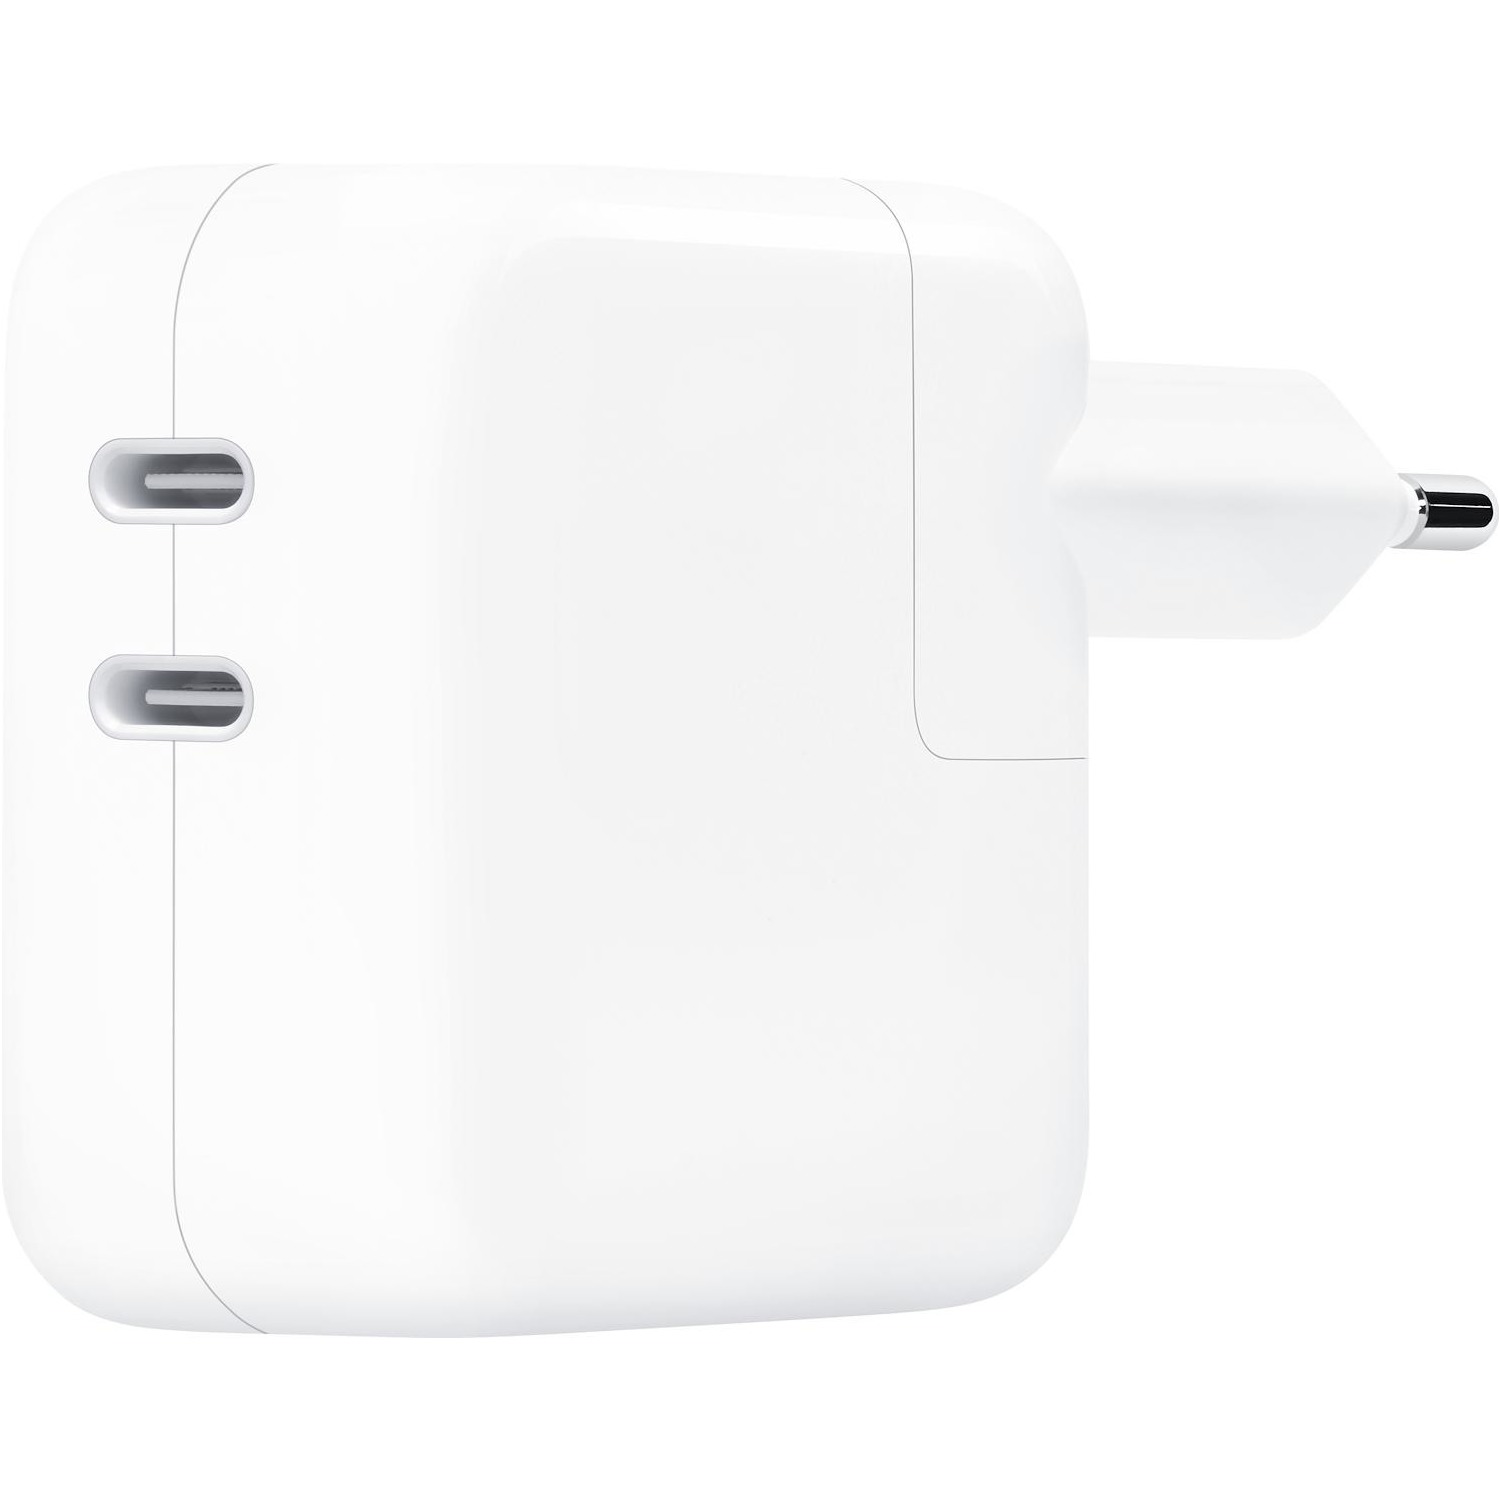 Immagine per Alimentatore Apple USB-C da 35W per MacBook da DIMOStore